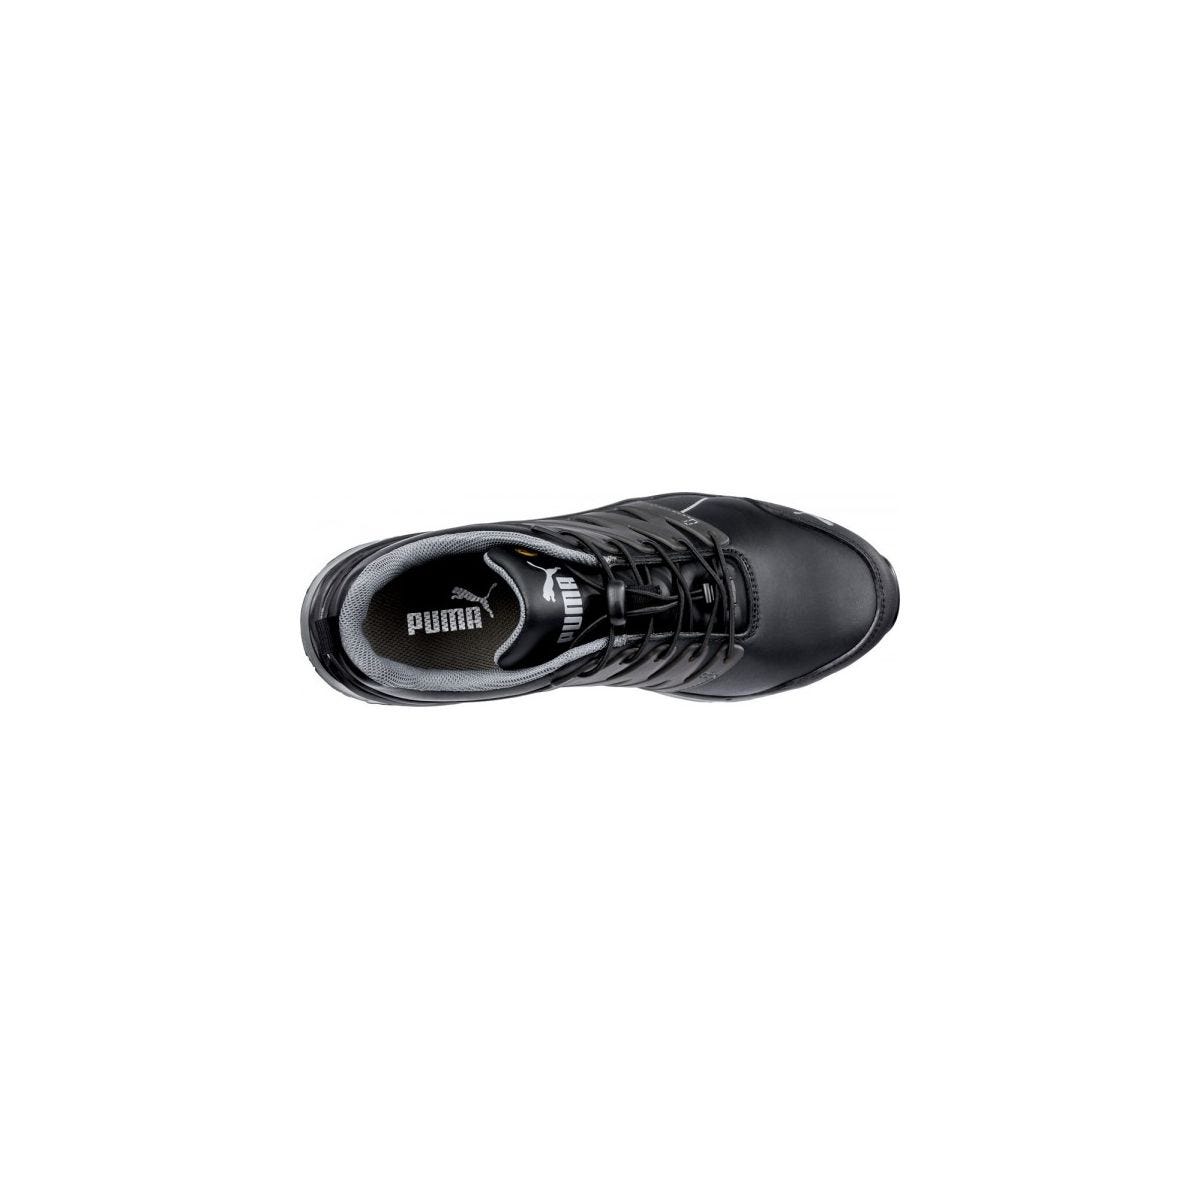 Chaussures de sécurité Velocity 2.0 Noir Low S3 - Puma - Taille 37 3